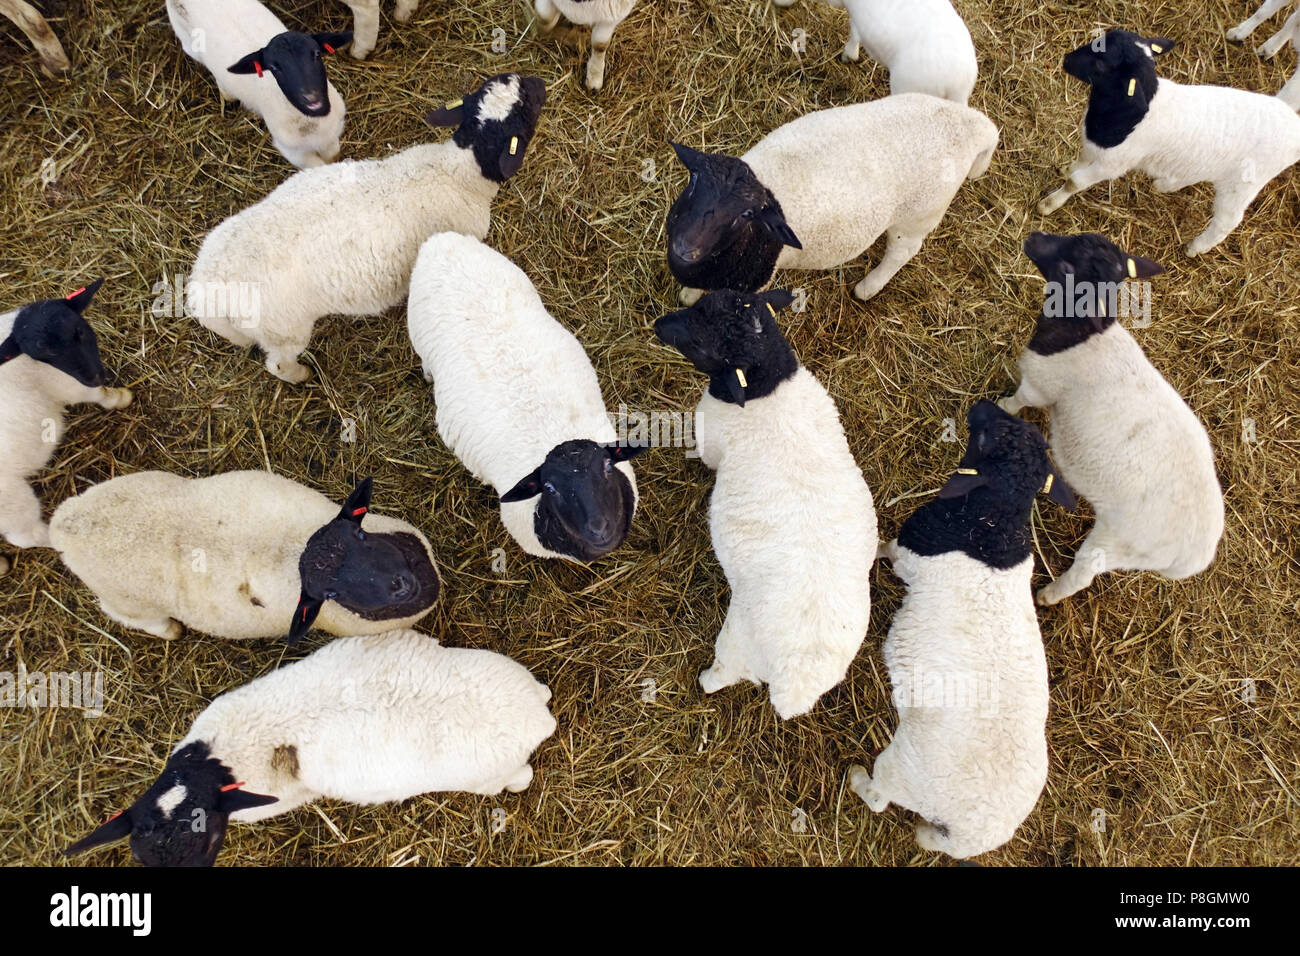 Kaetwin nouveau, l'Allemagne, les jeunes moutons Dorper regarder curieusement dans la grange Banque D'Images